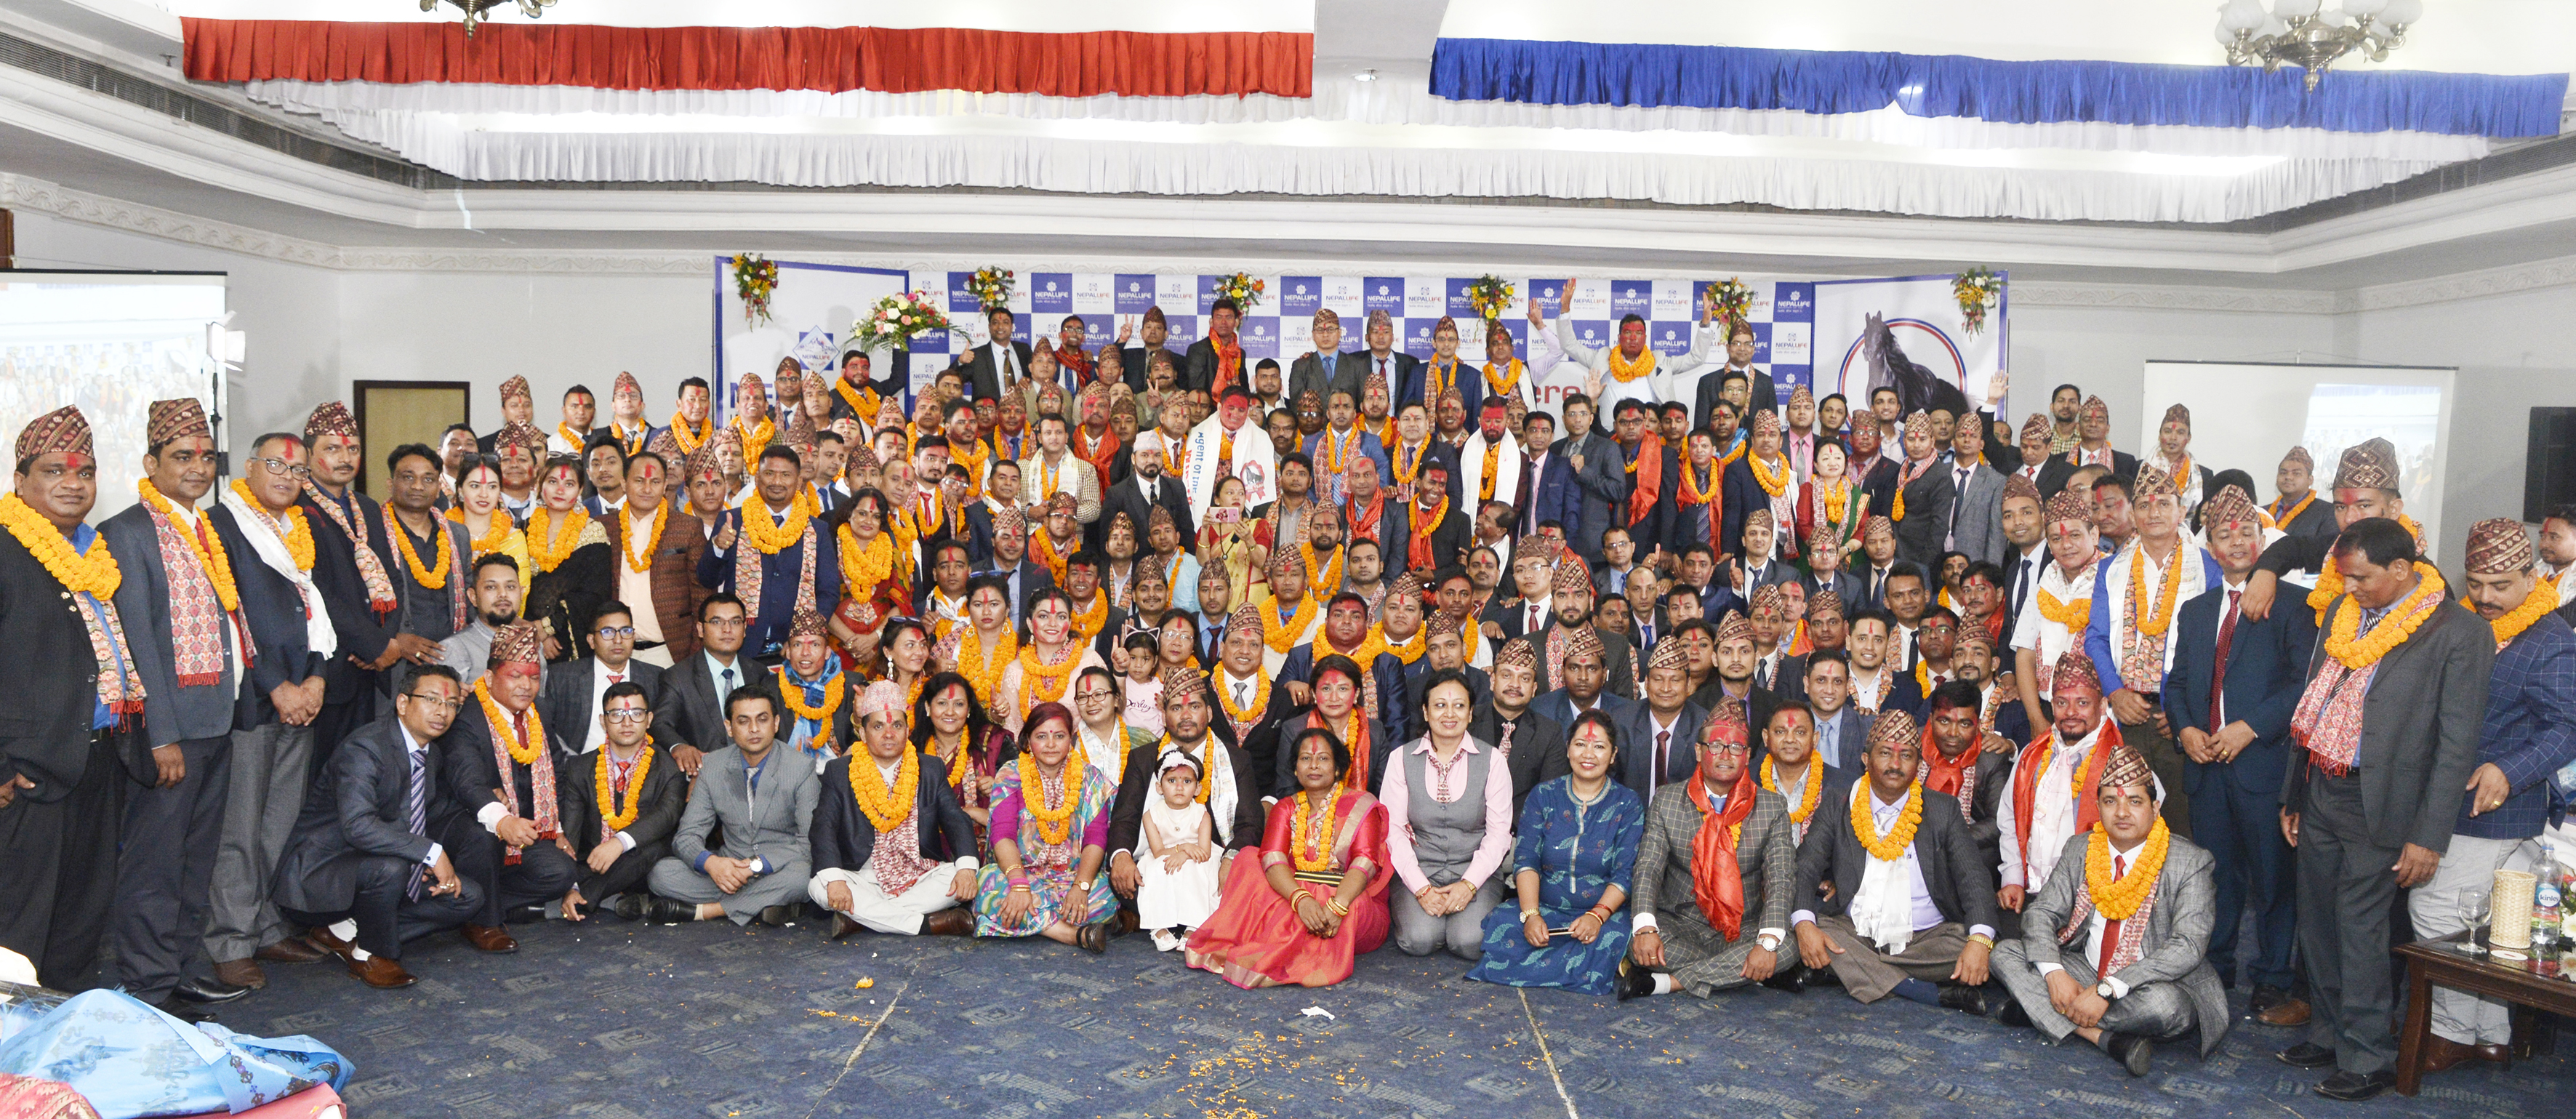 नेपाल लाइफद्धारा उत्कृष्ट एजेन्ट र एजेन्सी म्यानेजर पुरस्कृत